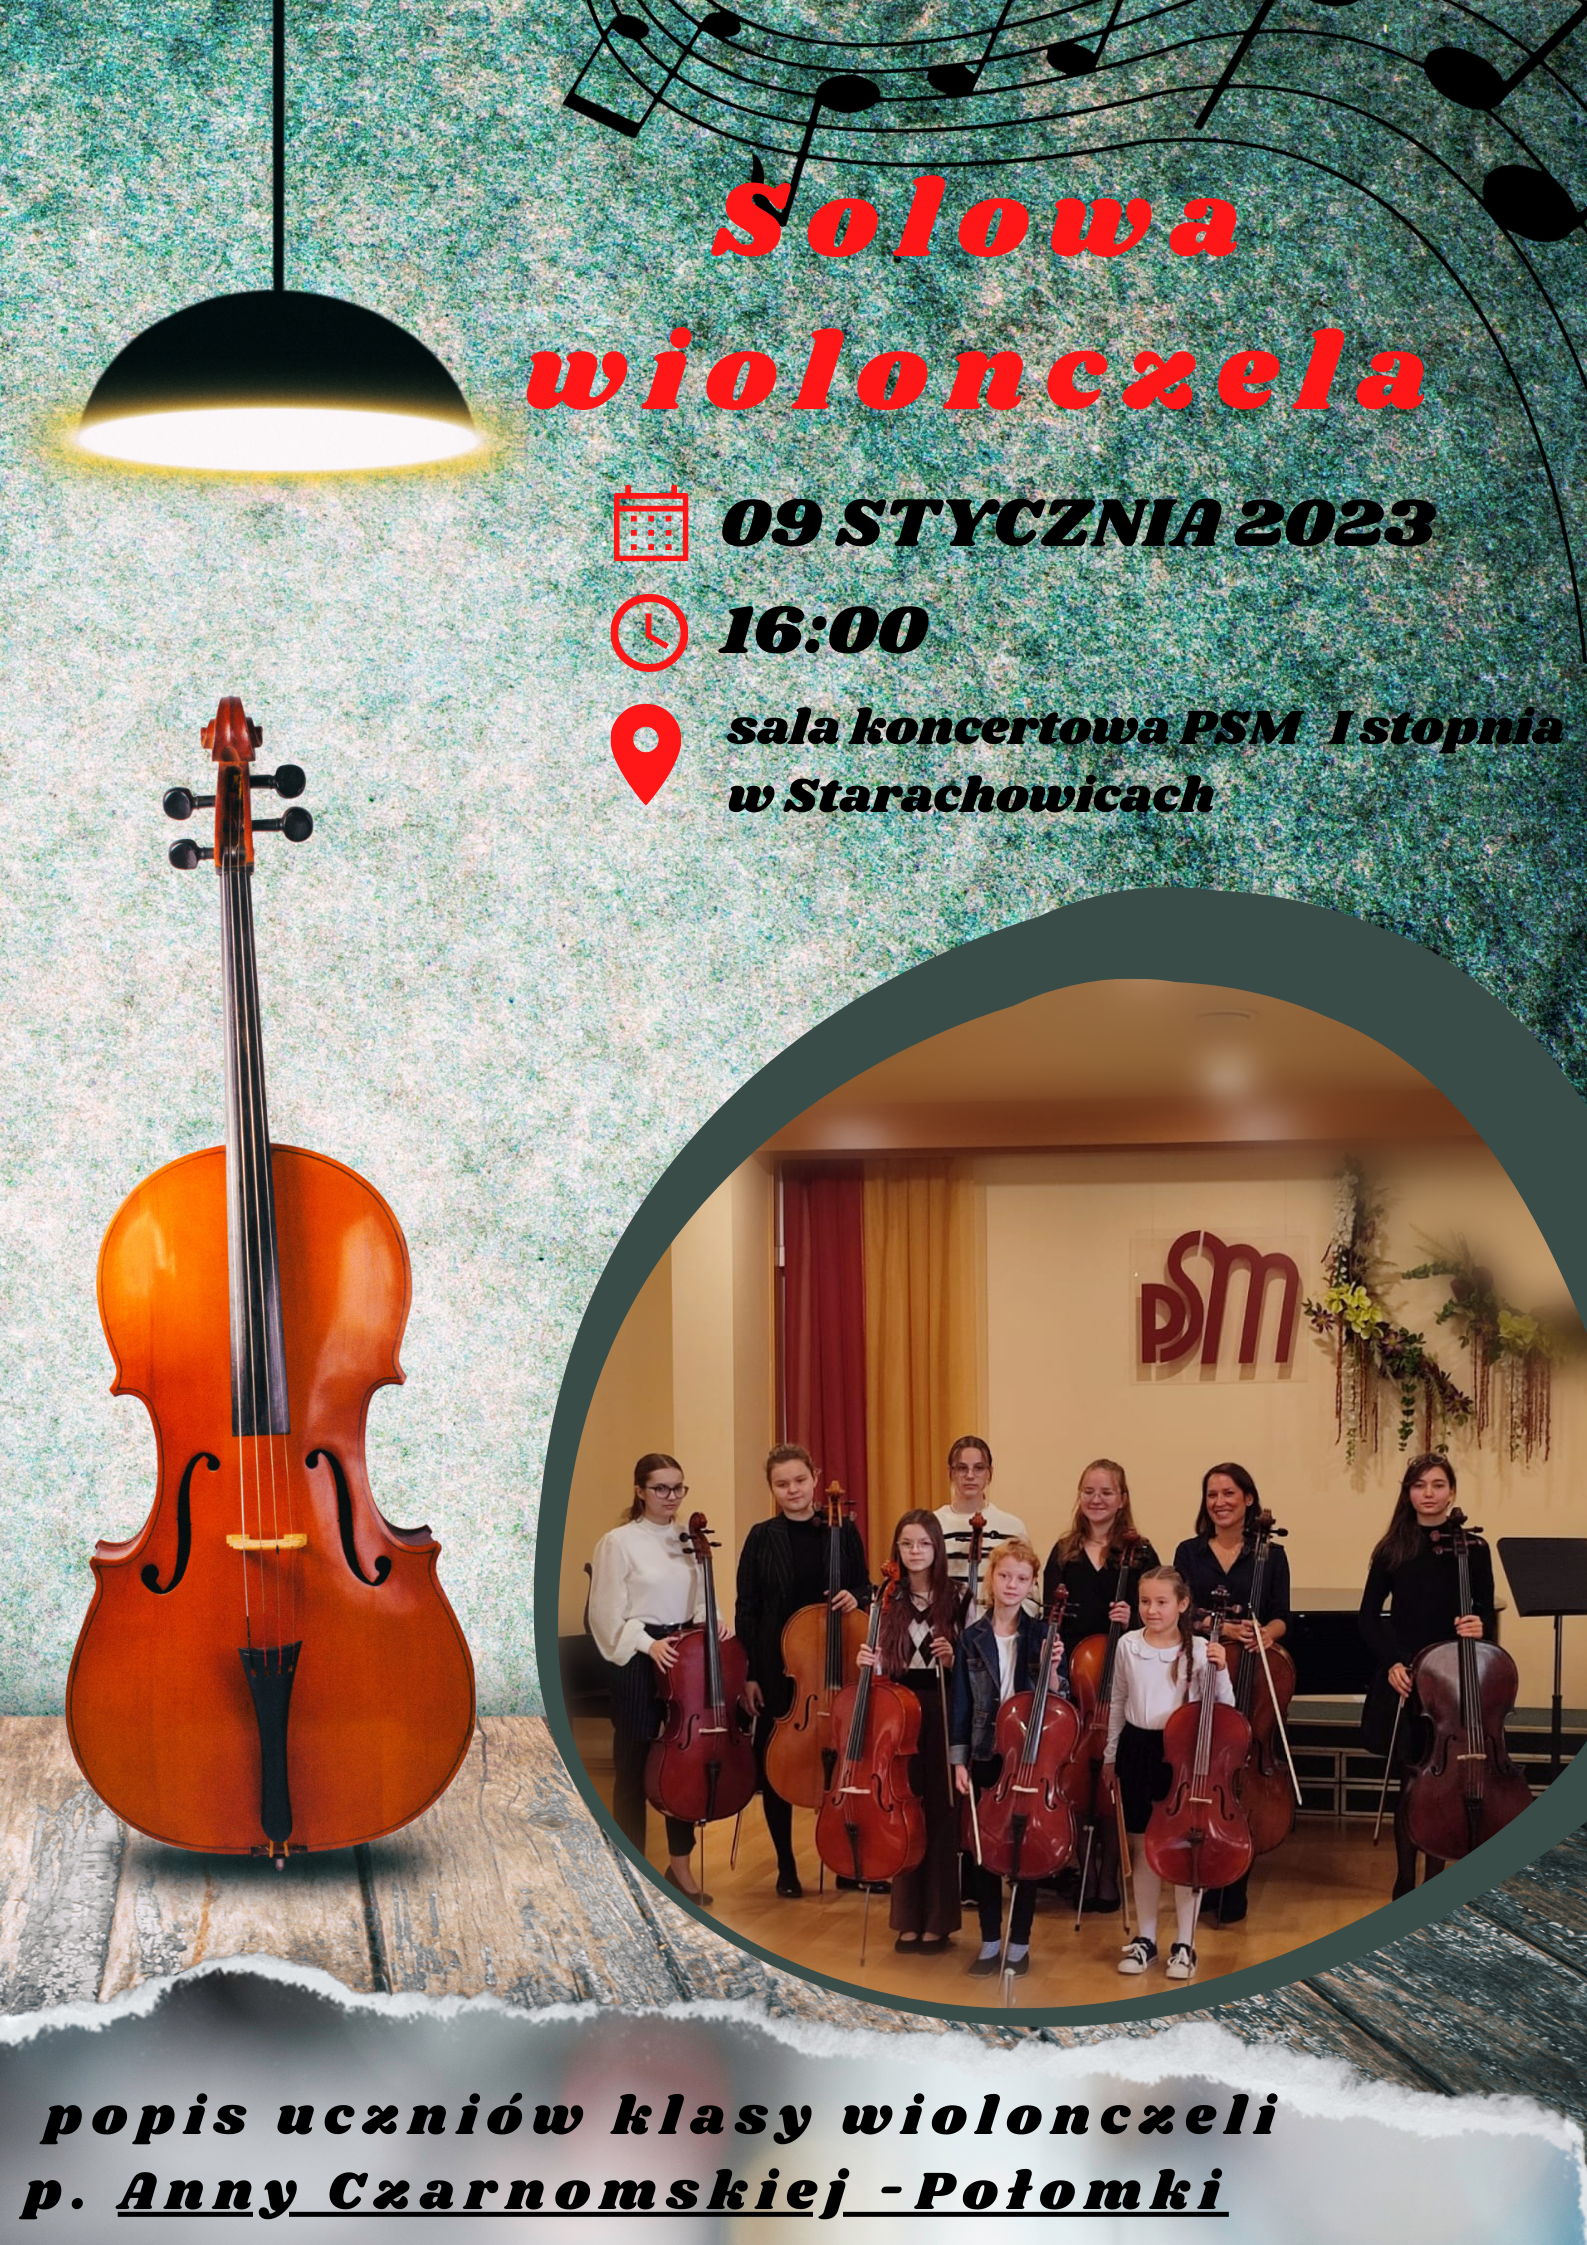 plakat graficzny - Solowa wiolonczela , 9 stycznia 2023 godz. 16.00 , sala koncertowa, po lewej czarna lampa, tło turkusowe